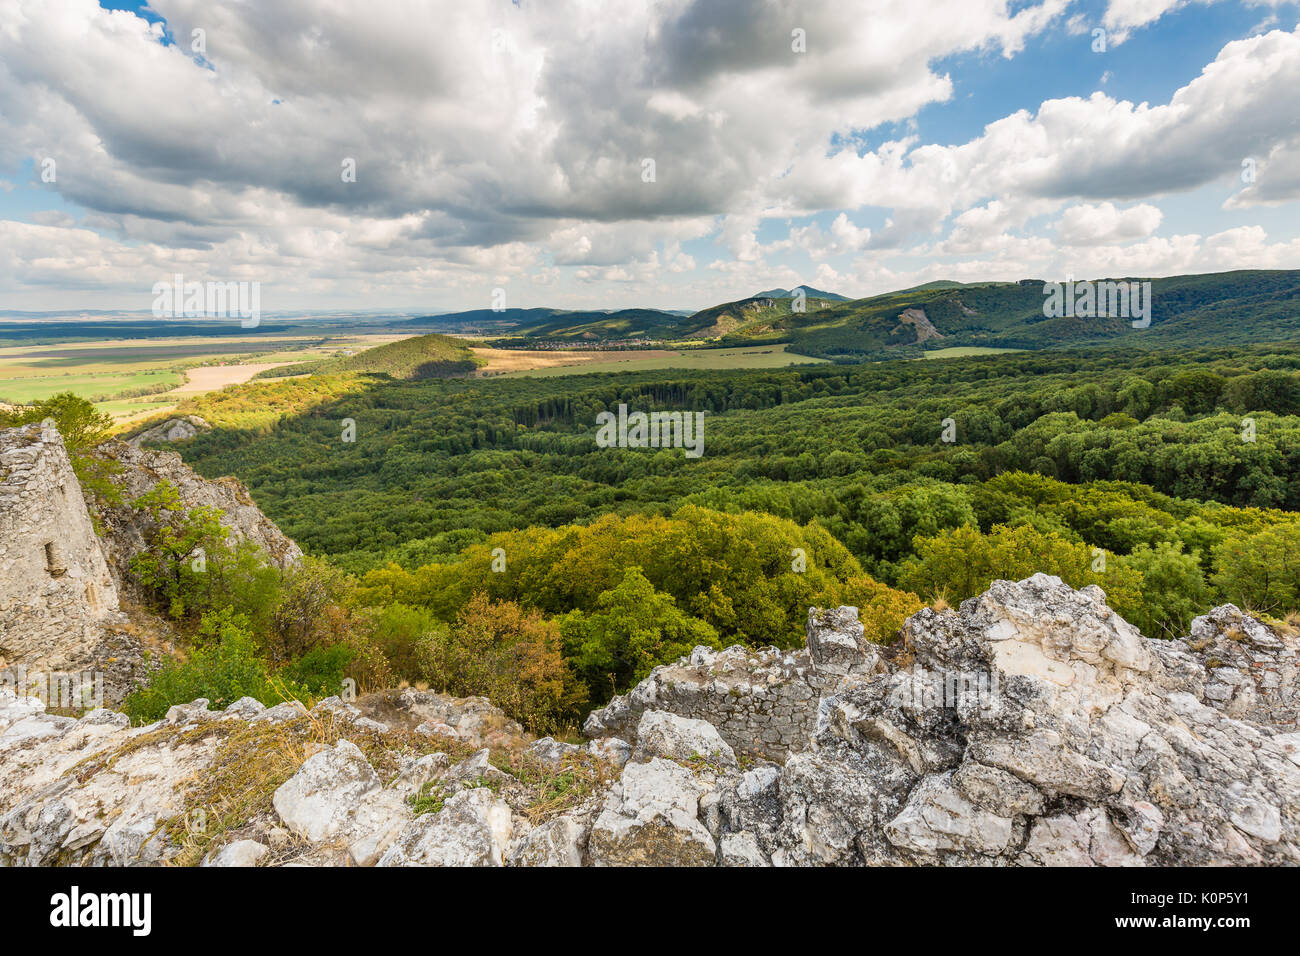 Dans le cadre du paysage les ruines du château médiéval 'plavecky hrad'. de la Slovaquie, de l'Europe centrale. Banque D'Images